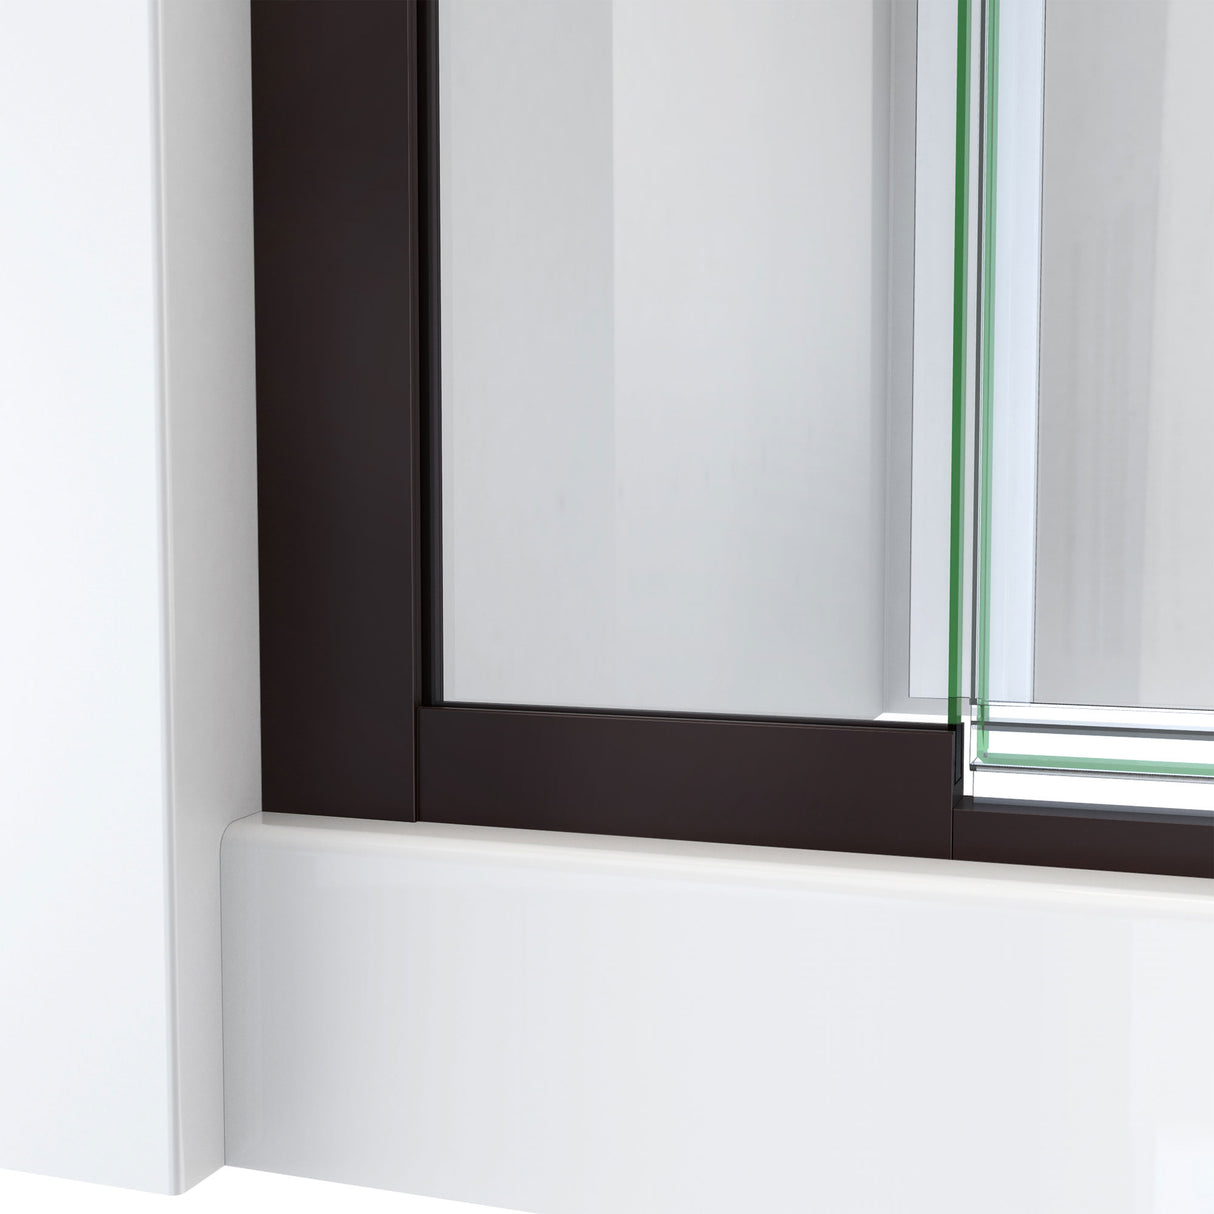 DreamLine Terrace 58 in. W x 72 in. H Semi-Frameless Pivot Shower Door in Oil Rubbed Bronze